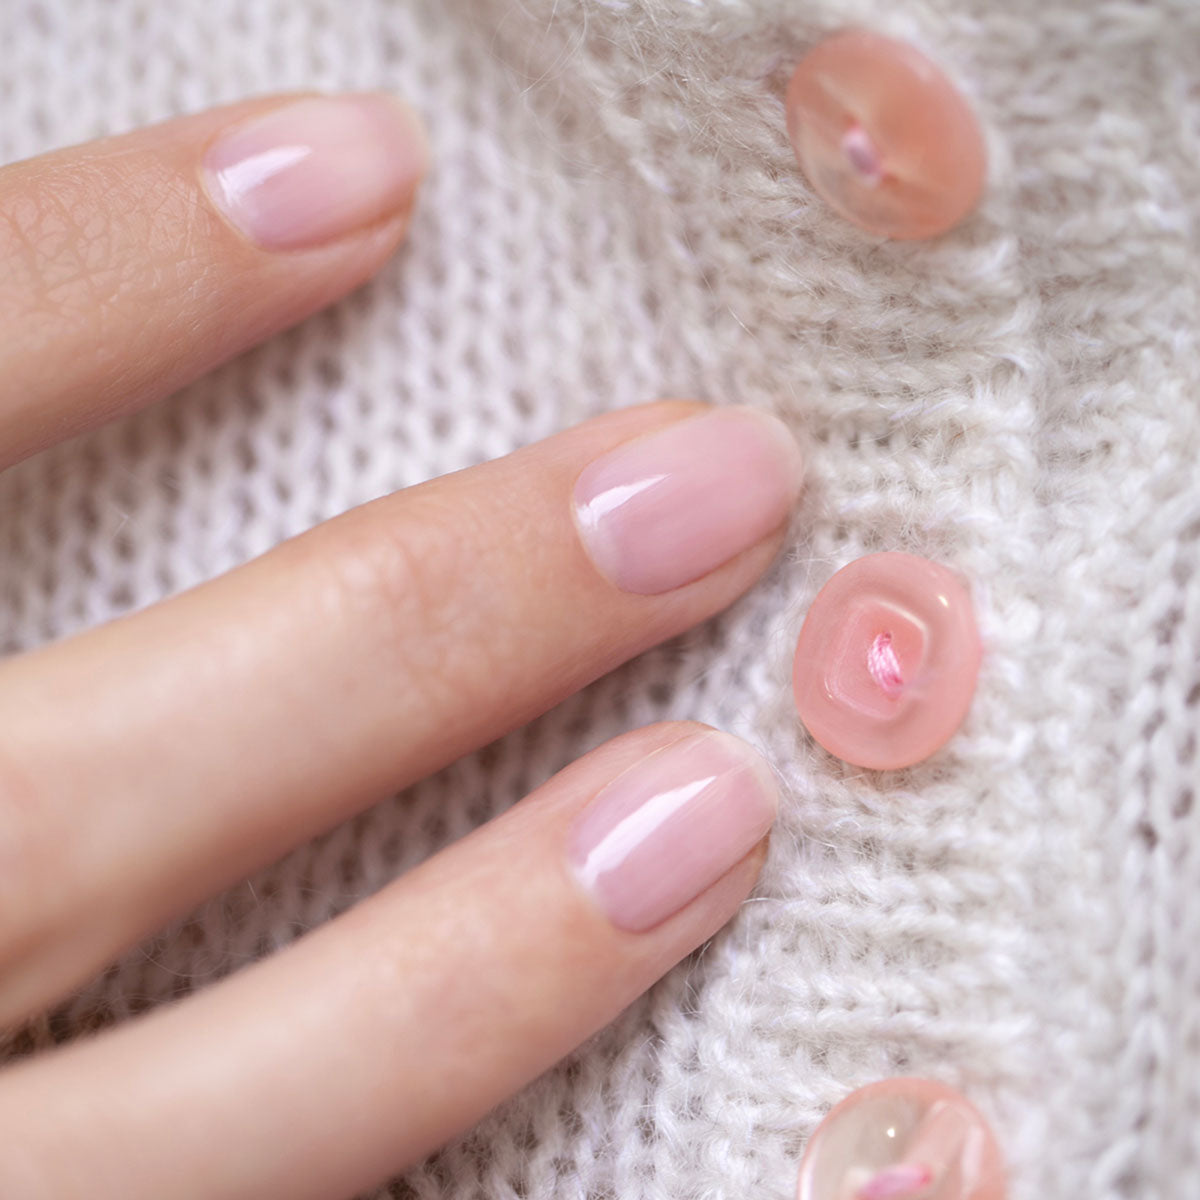 homemade baby pink nail polish||how to make nail polish at home||diy soft pink  nail polish|| - YouTube